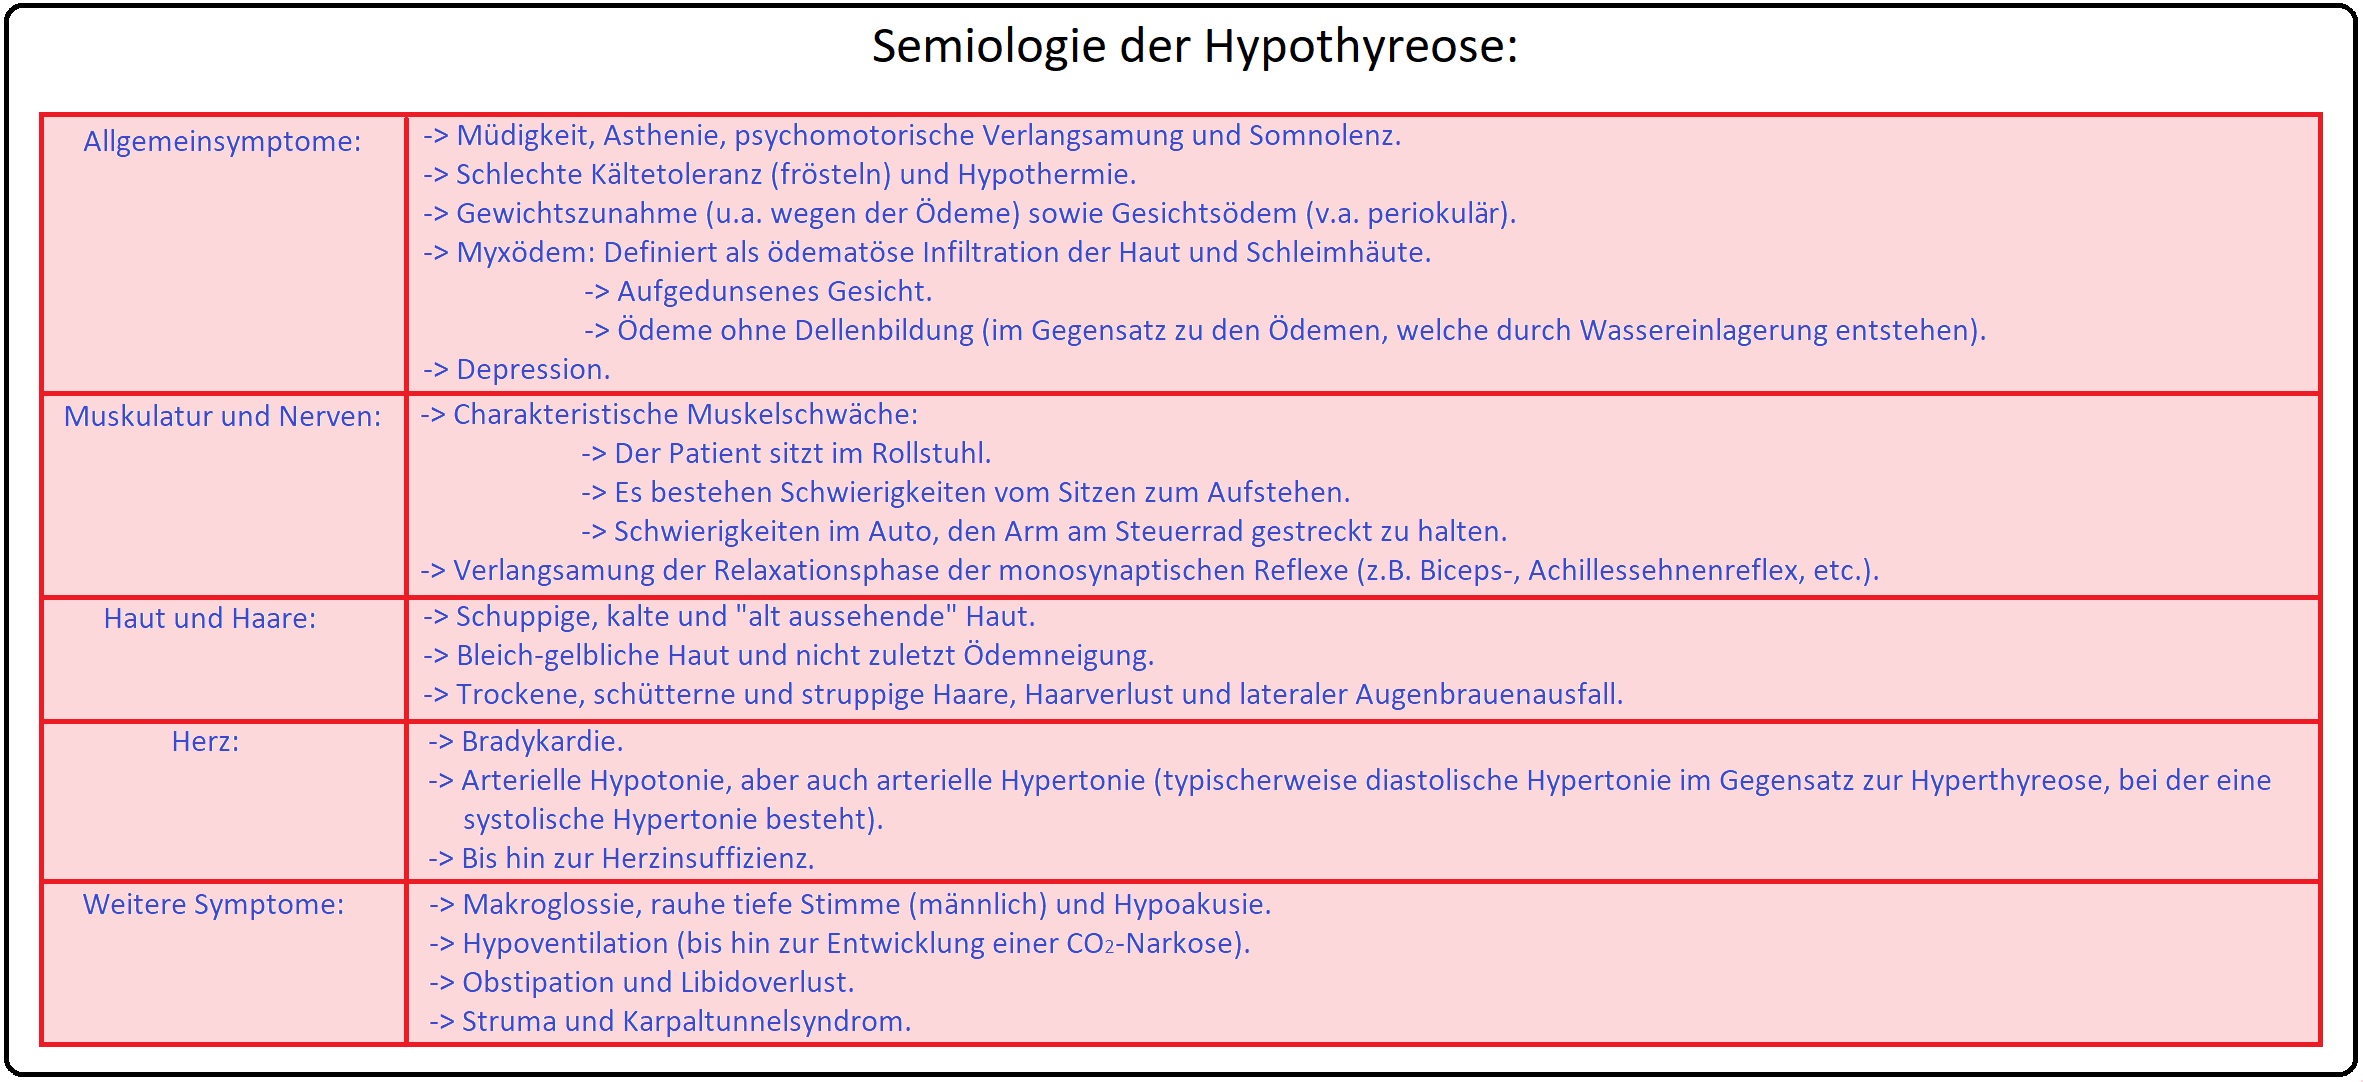 1224 Semiologie der Hypothyreose